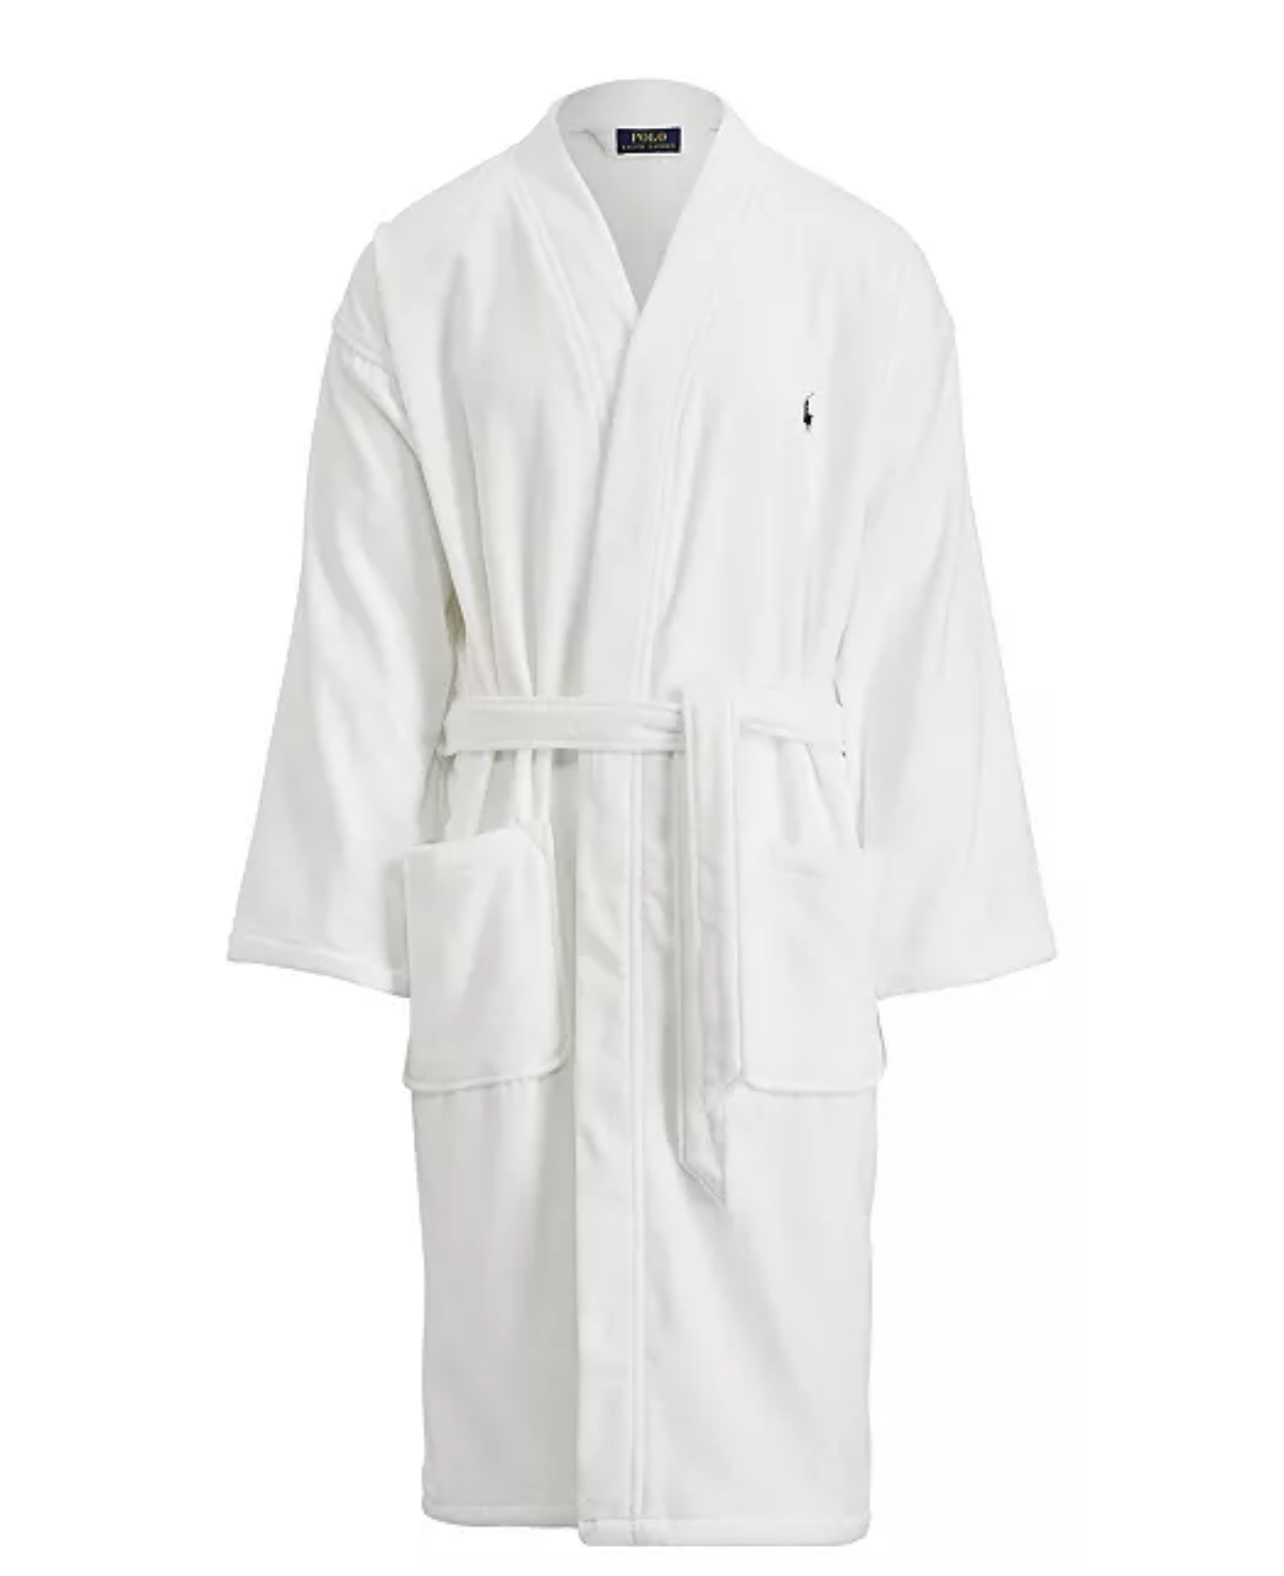 men's white bath robe